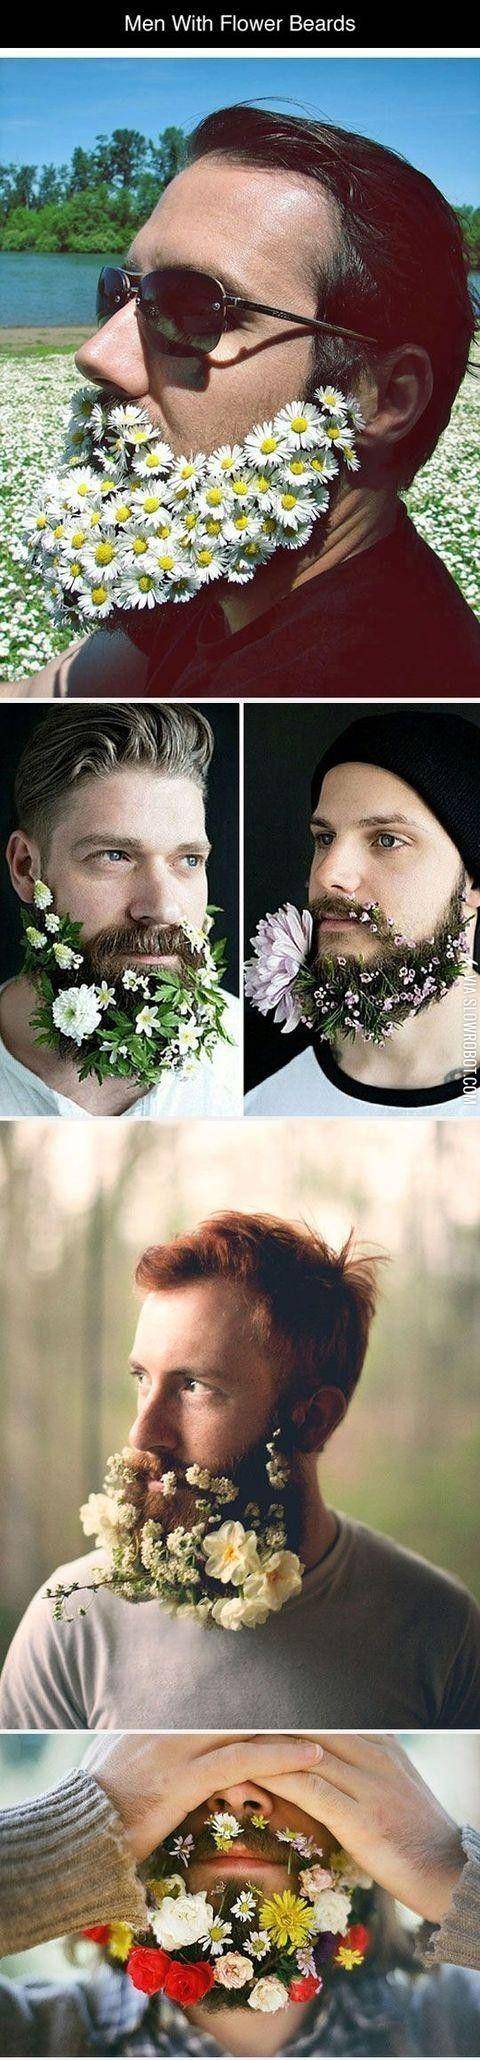 Men+with+flower+beards